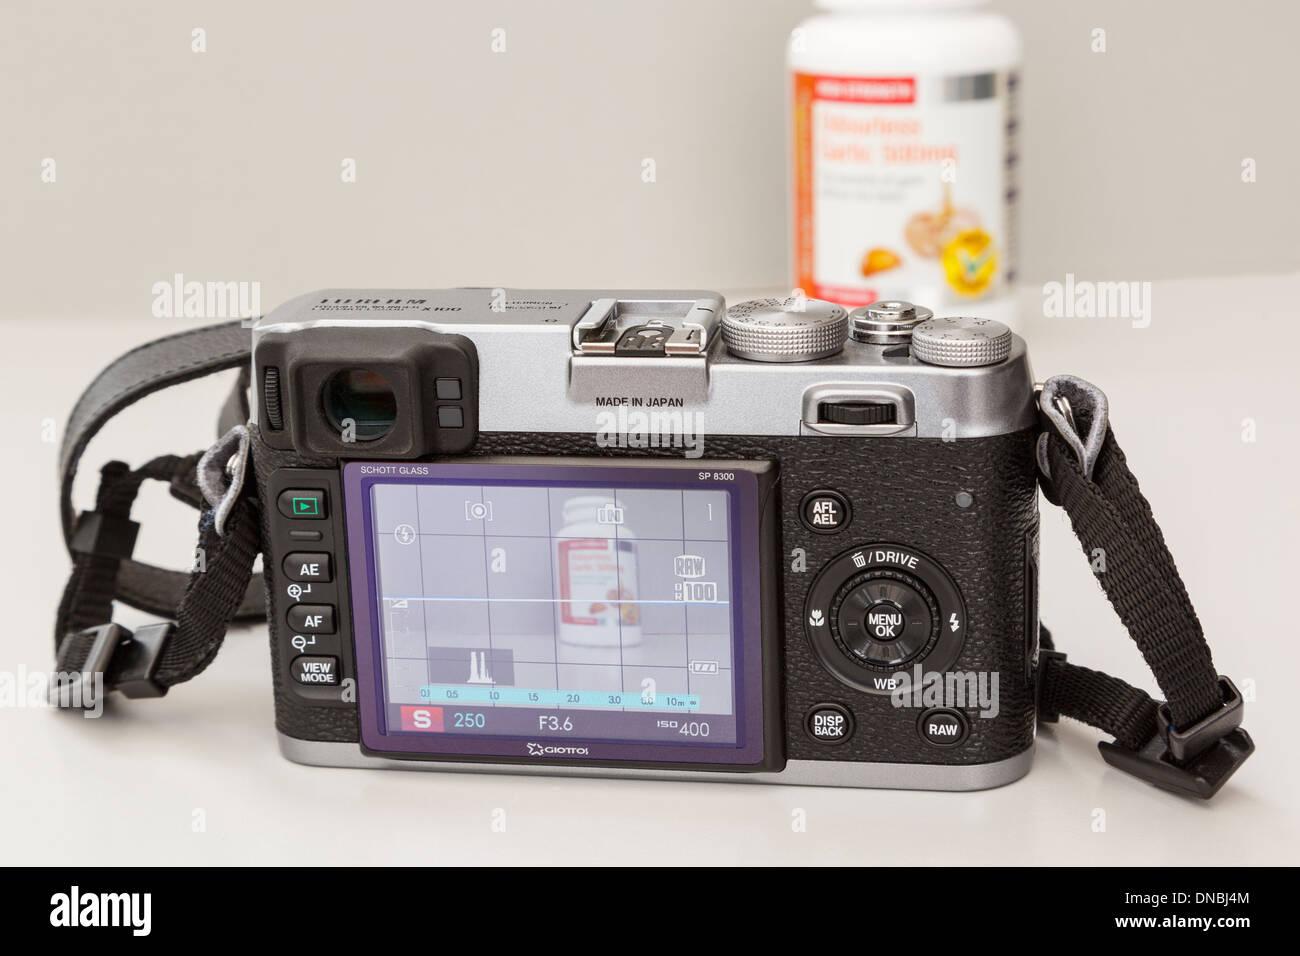 Fujifilm X100 cámara digital compacta retro LCD trasero mostrando la configuración y el modo Live View de fotografiar un objeto Foto de stock